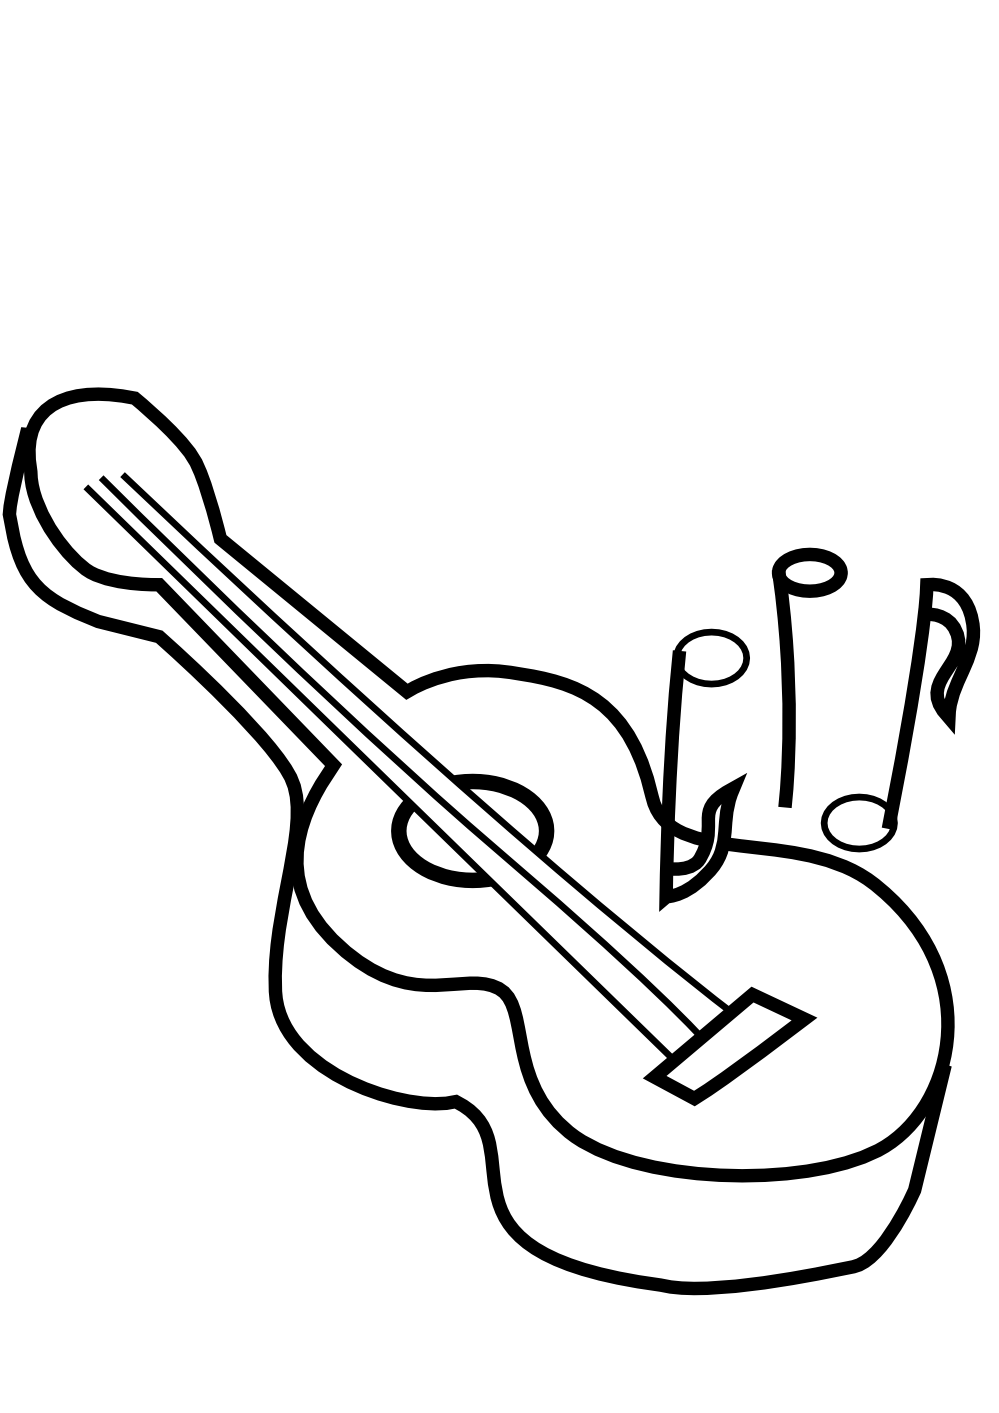 clipartist.net » Clip Art » bg guitar black white line art SVG